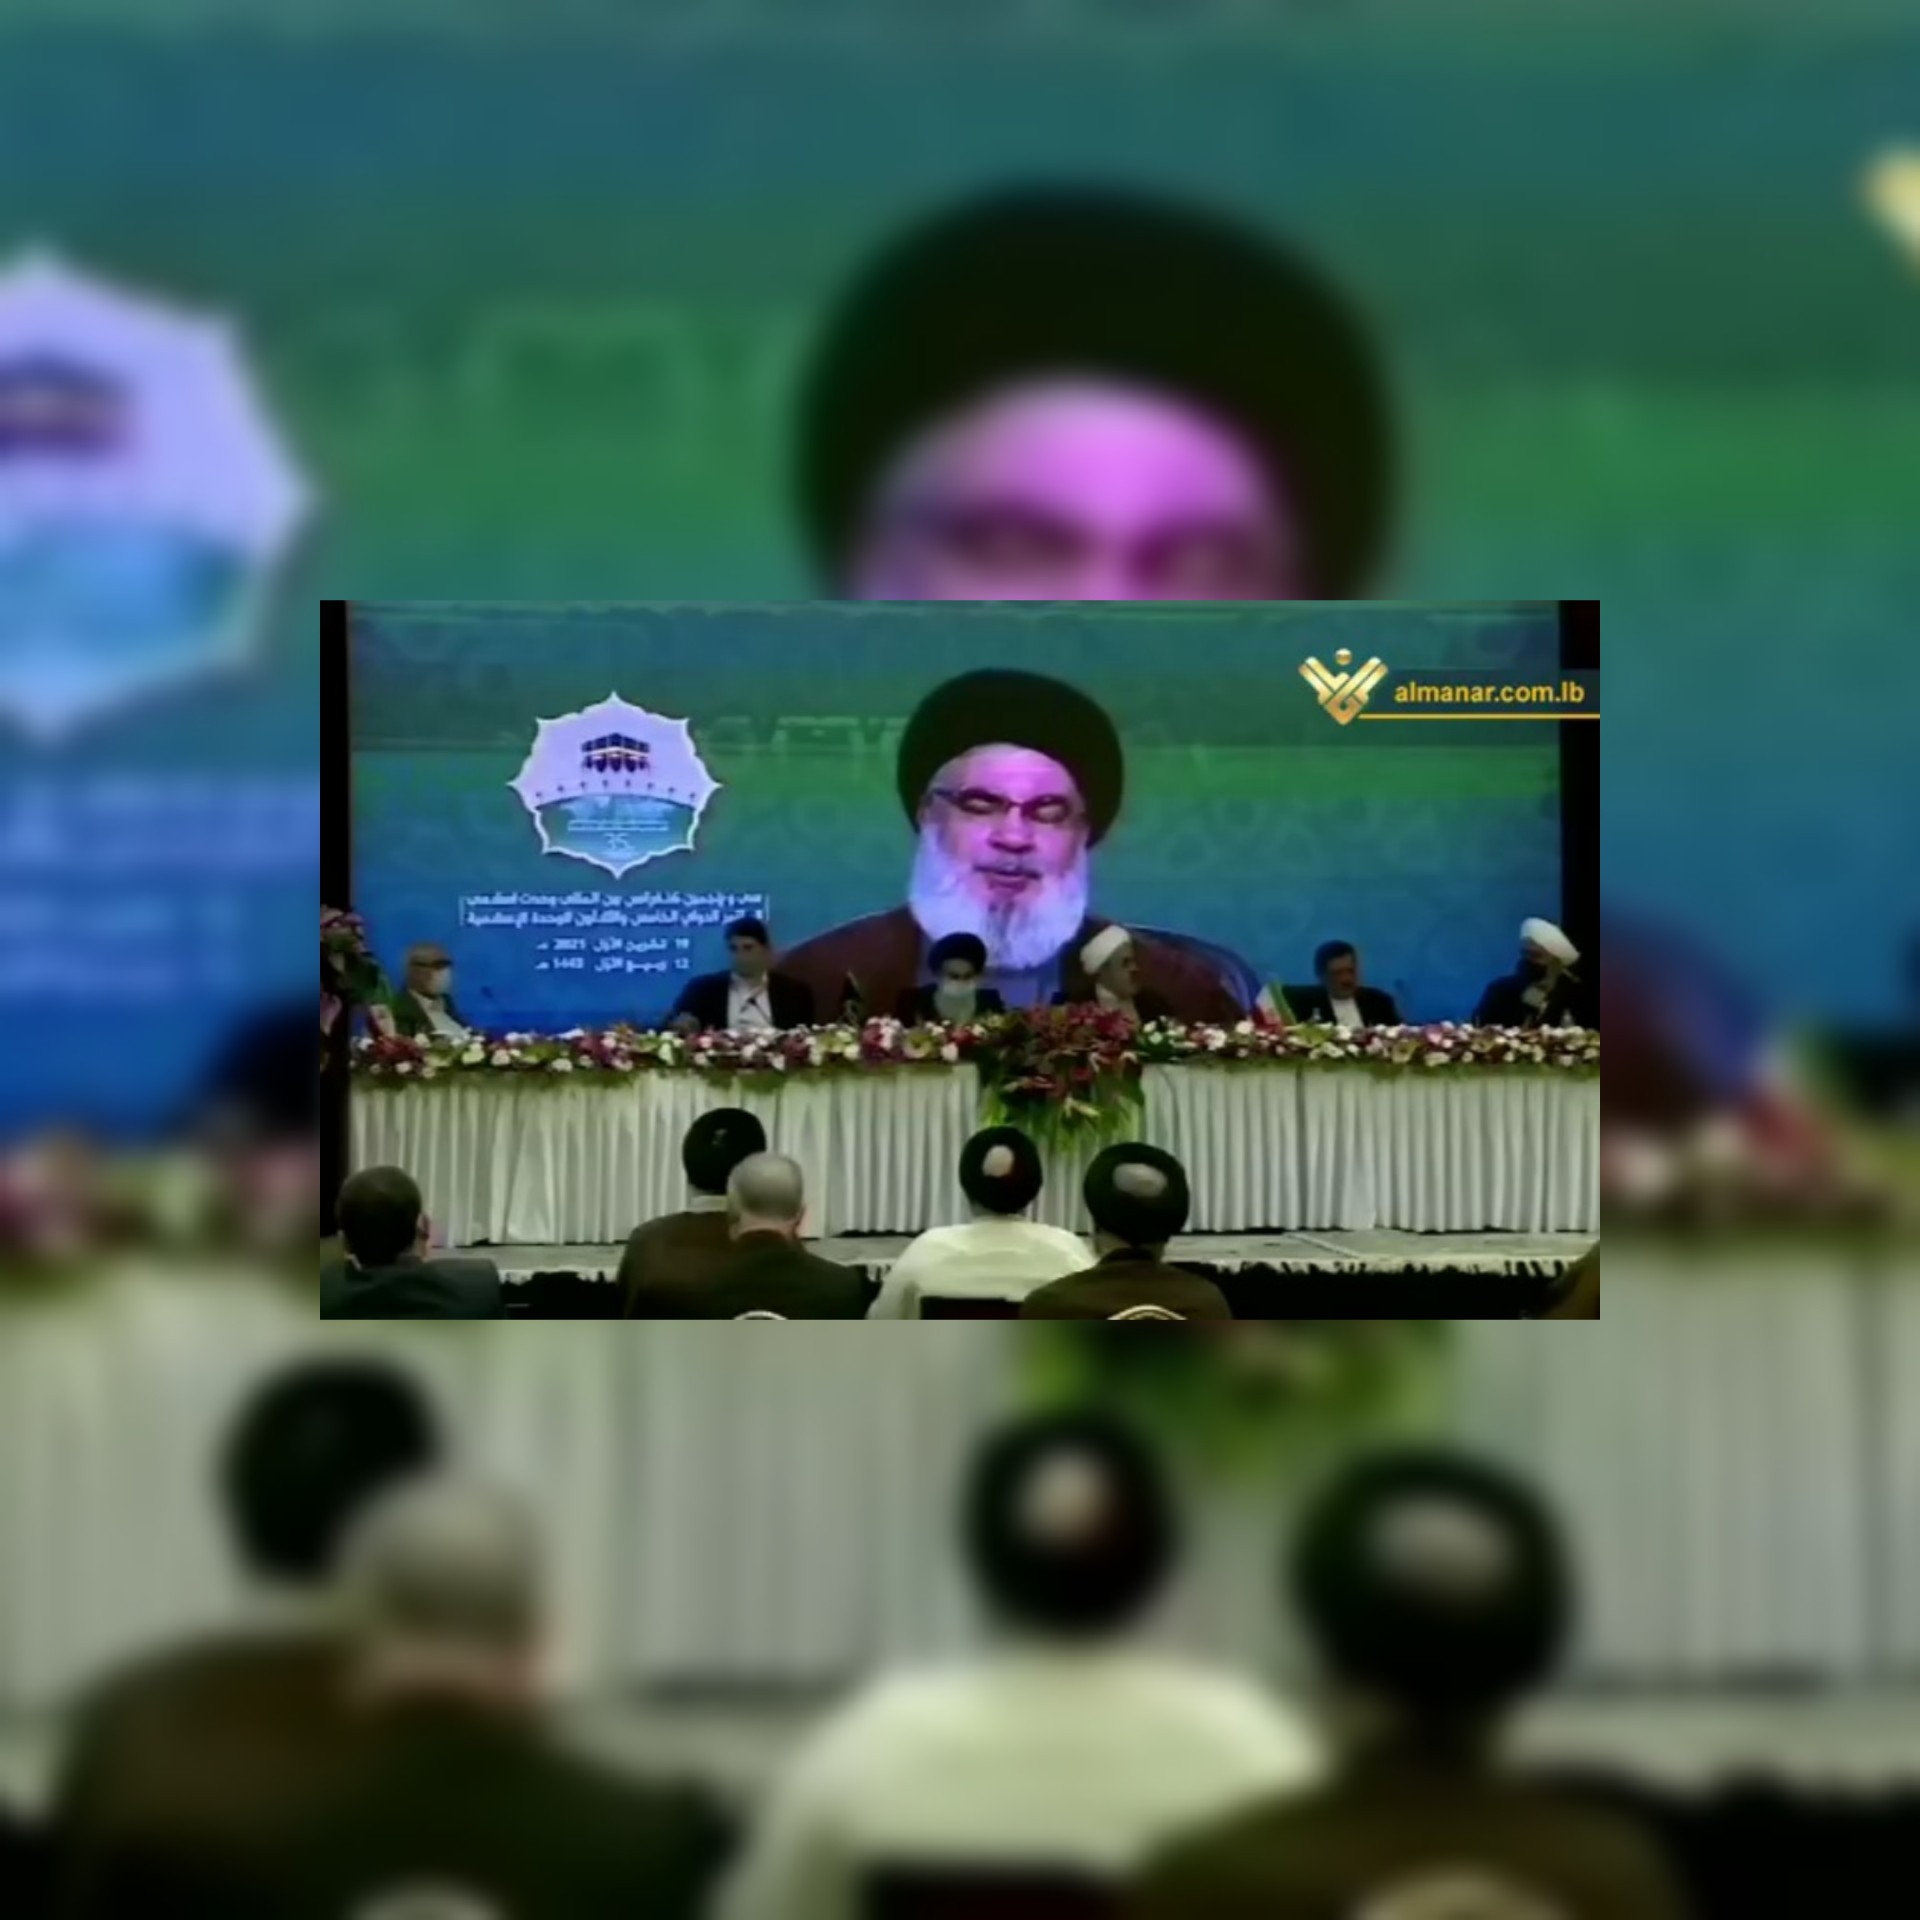 المؤتمر الدولي الخامس والثلاثين للوحدة الإسلامية في طهران كلمة السيد حسن نصر الله بالفيديو